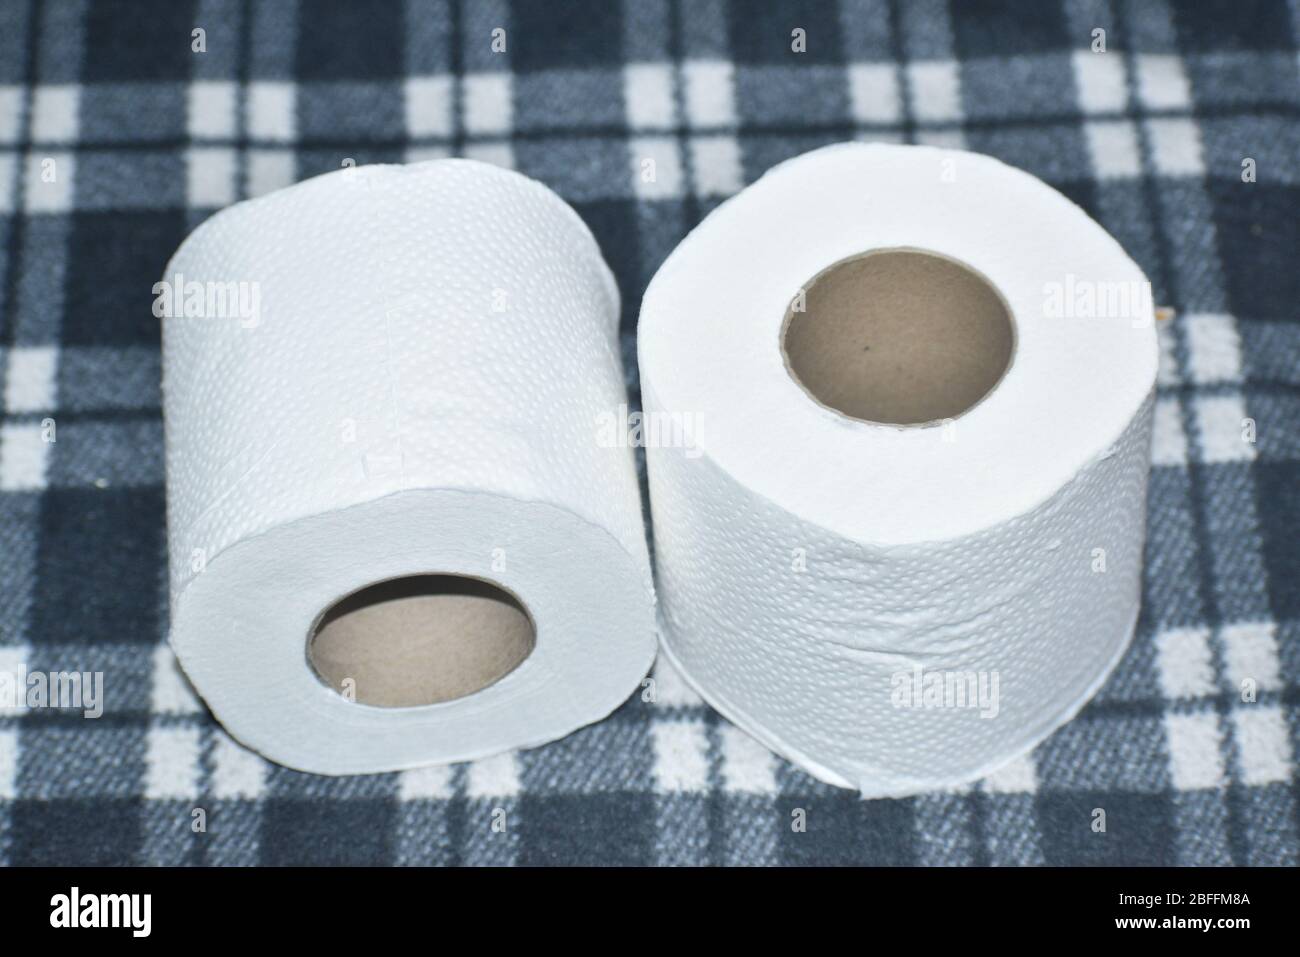 Vue détaillée des rouleaux de papier toilette isolés sur fond noir Banque D'Images